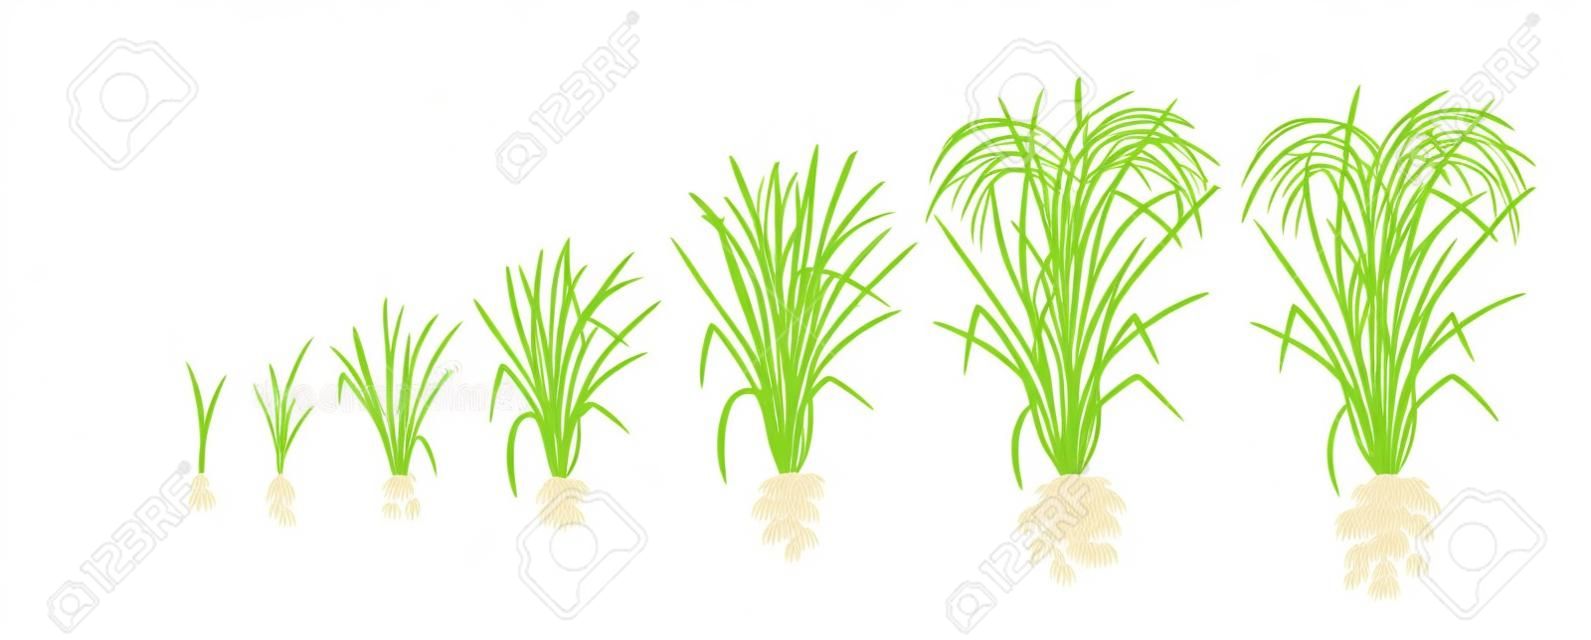 벼 식물의 성장 단계. 쌀 증가 단계. 벡터 일러스트 레이 션. 오리자 사티바. 숙성 기간. 수명 주기. 비료를 사용하십시오. 흰색 배경에. 세계에서 세 번째로 생산량이 많은 농산물입니다.